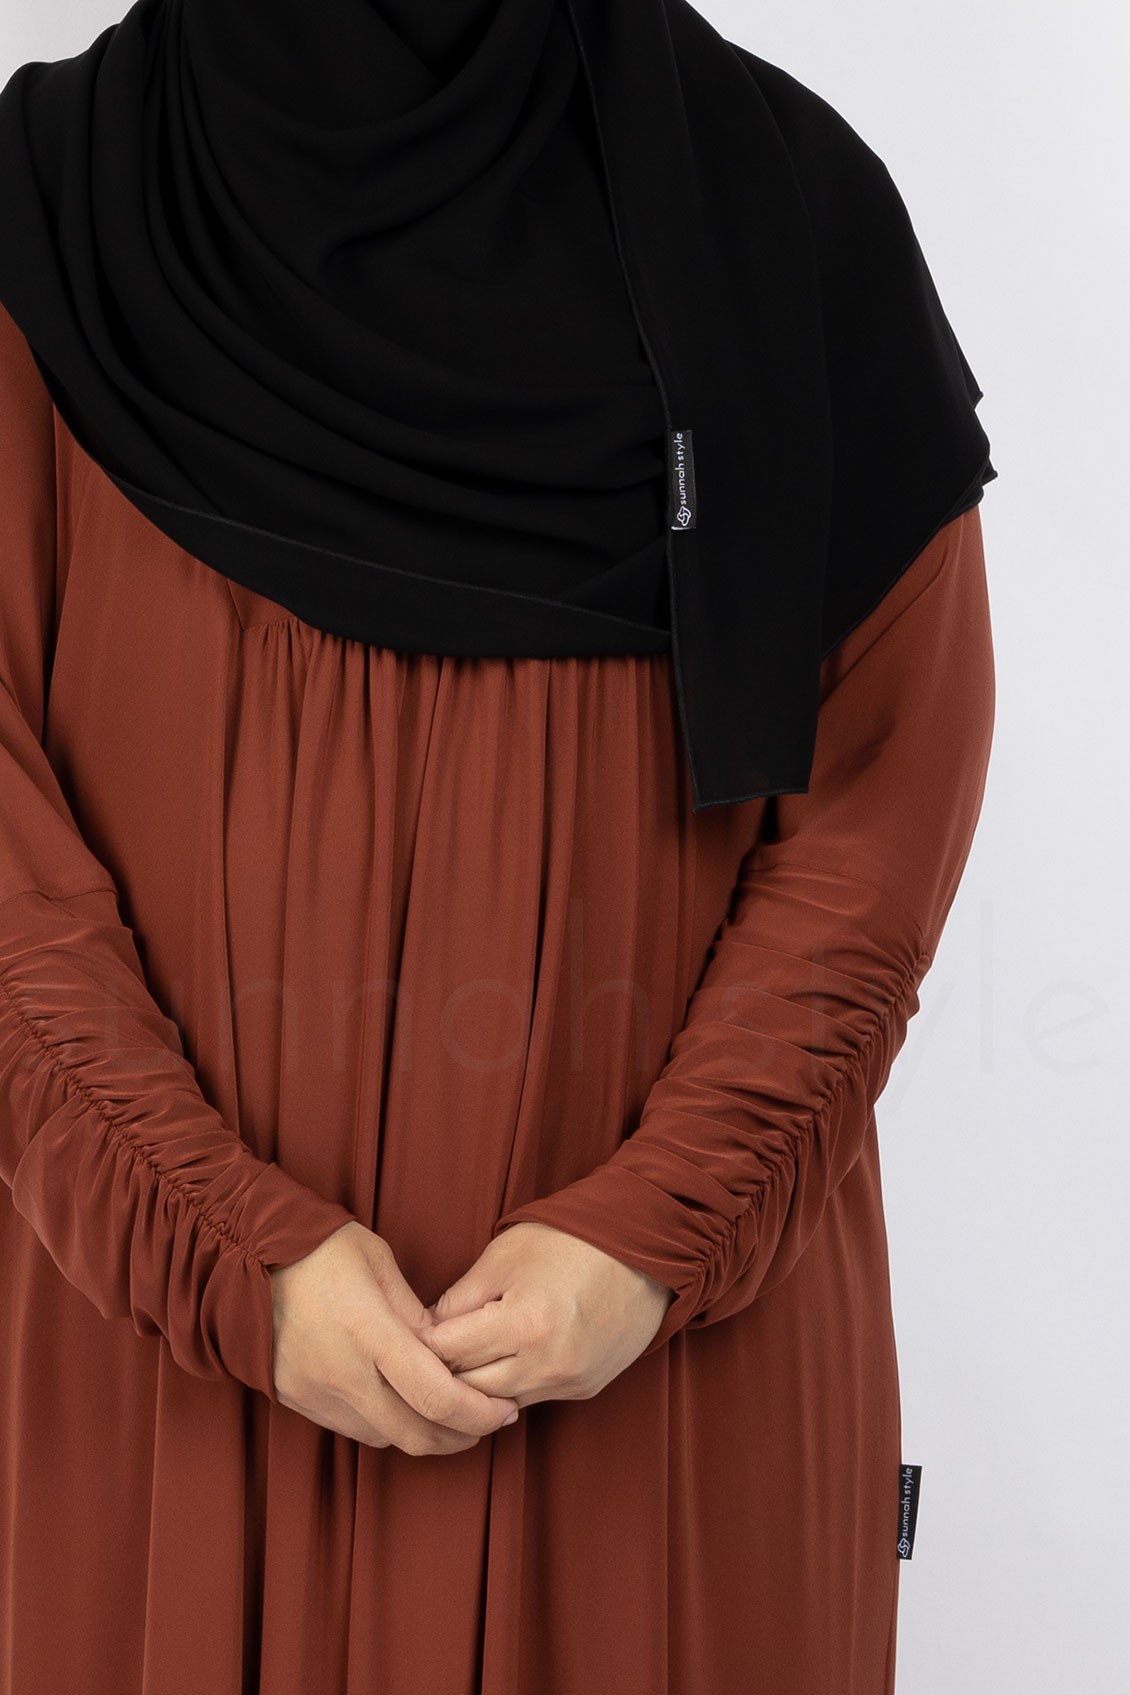 Sunnah Style Flourish Jersey Abaya Dark Amber